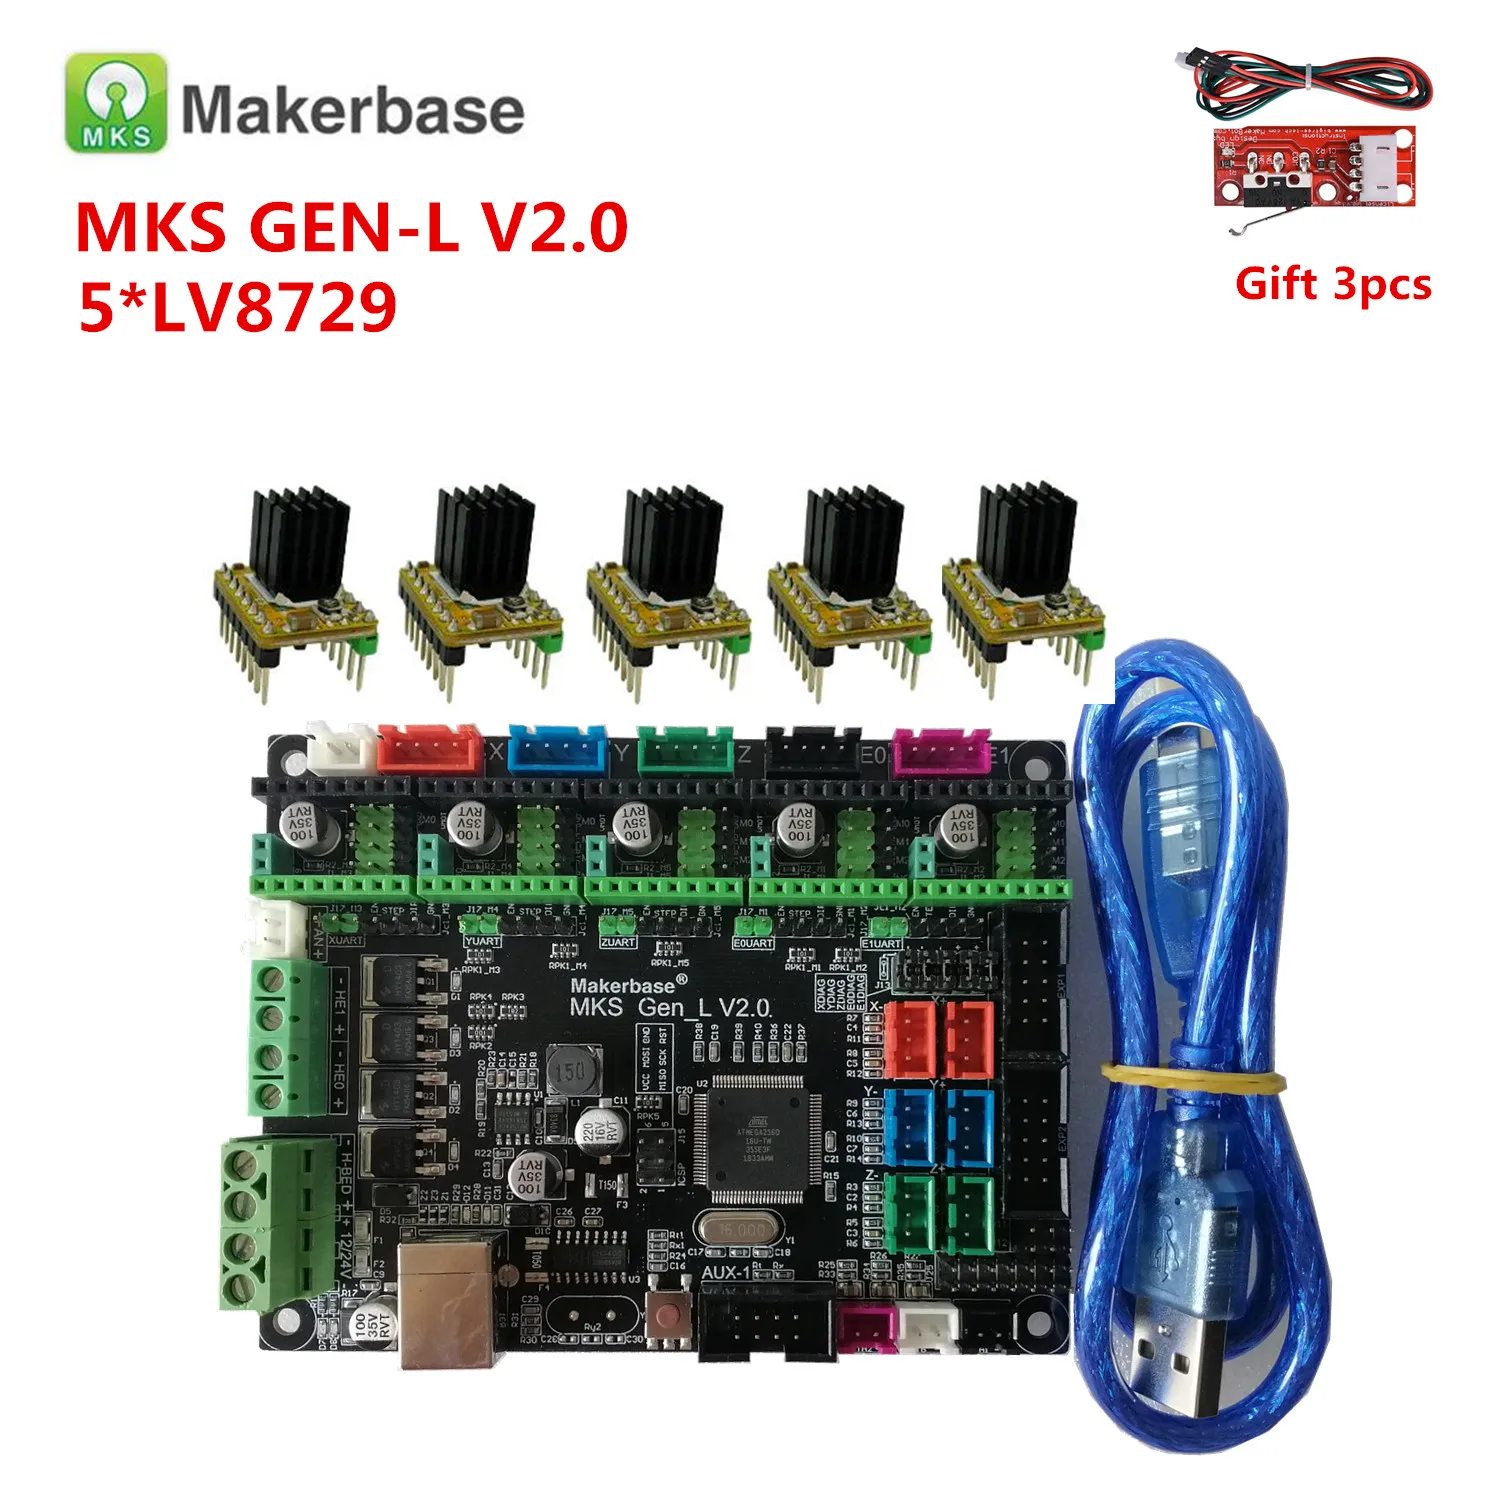 Makerbase MKS GEN L V2.0 3D Карточки Принтера системная плата управления поддерживает a4988 DRV8825 tmc2130 tmc2209 tmc2208 lv8729 tb6600 lv8727